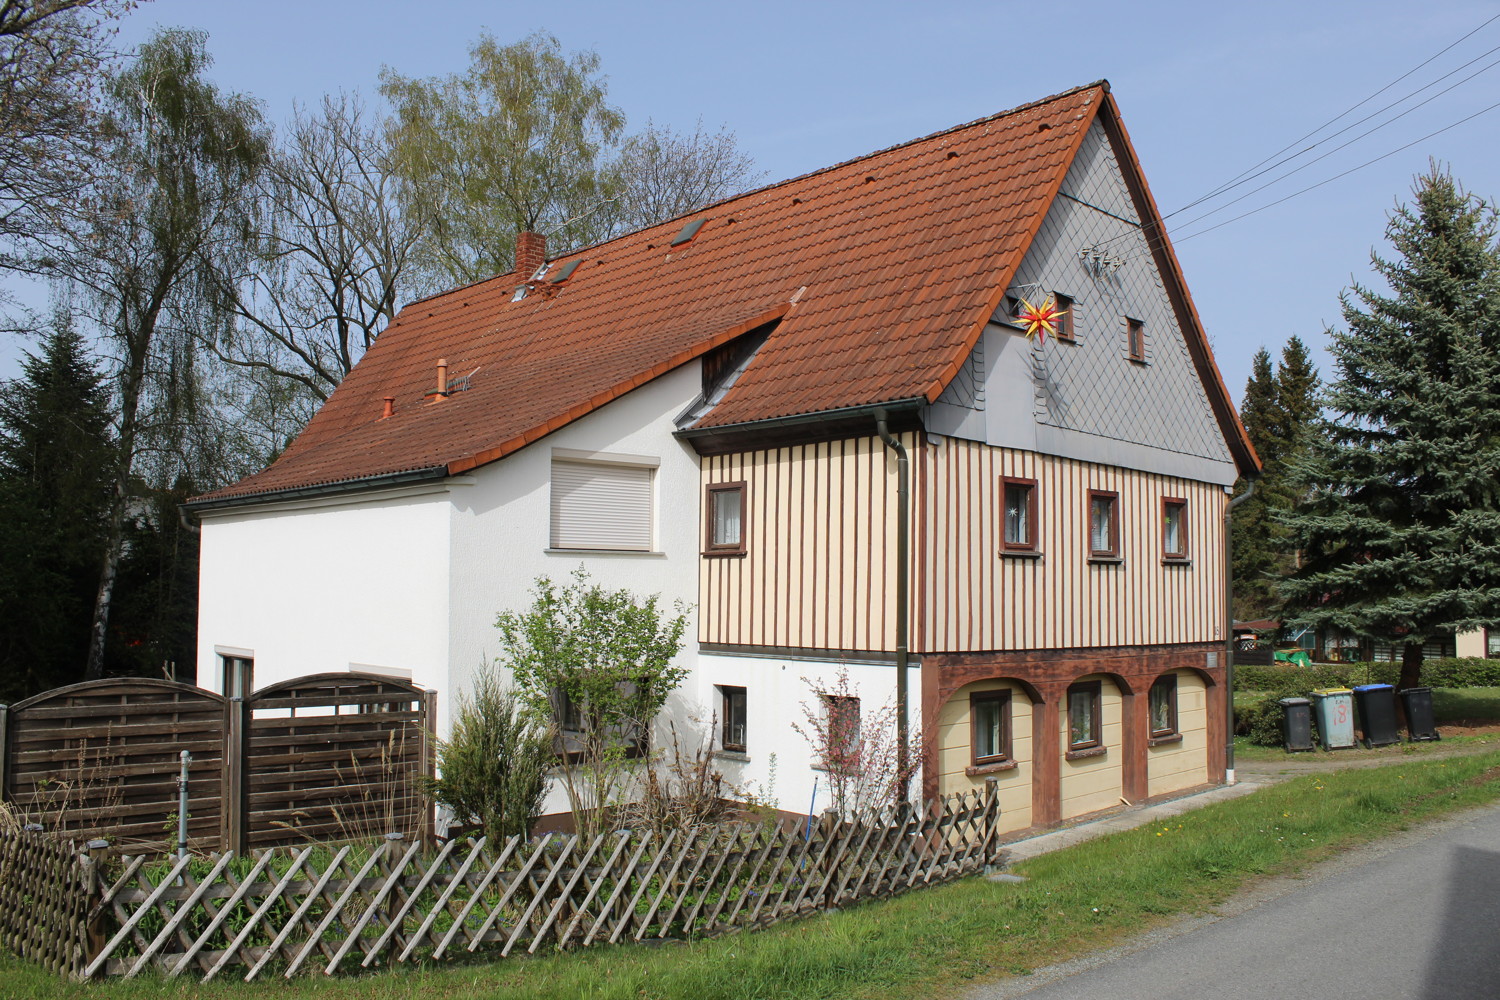 Historisches Fachwerkhaus mit großem Grundstück und vielfältigen Nutzungsmöglichkeiten